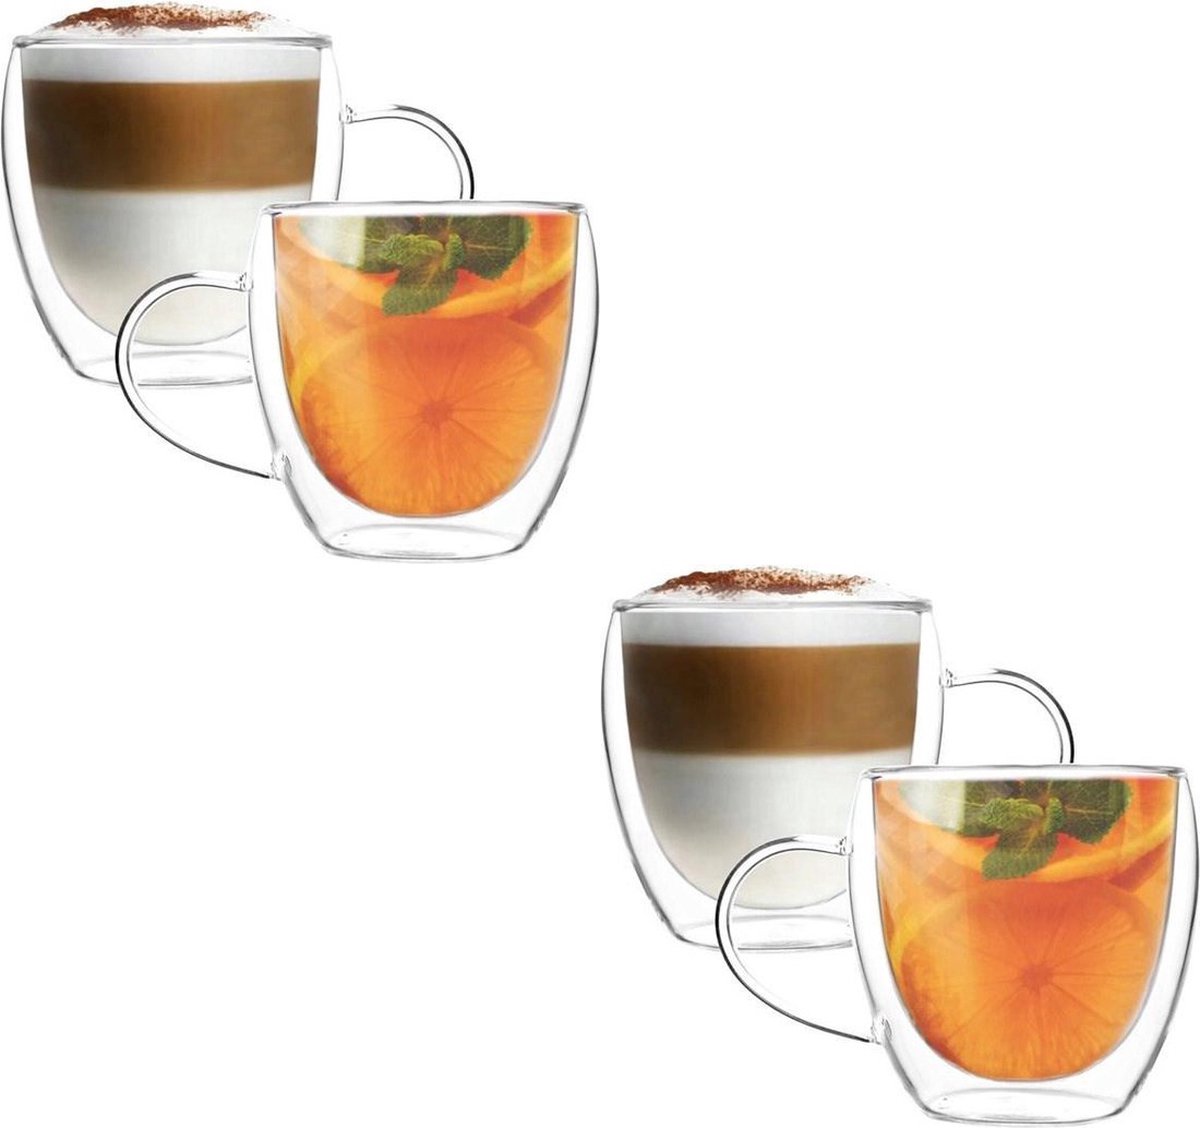 MONOO Dubbelwandige Glazen met Oor - Koffieglazen - Theeglazen - 250ML - 4 Stuks - Cappuccino Glazen - Latte Macchiato Glazen